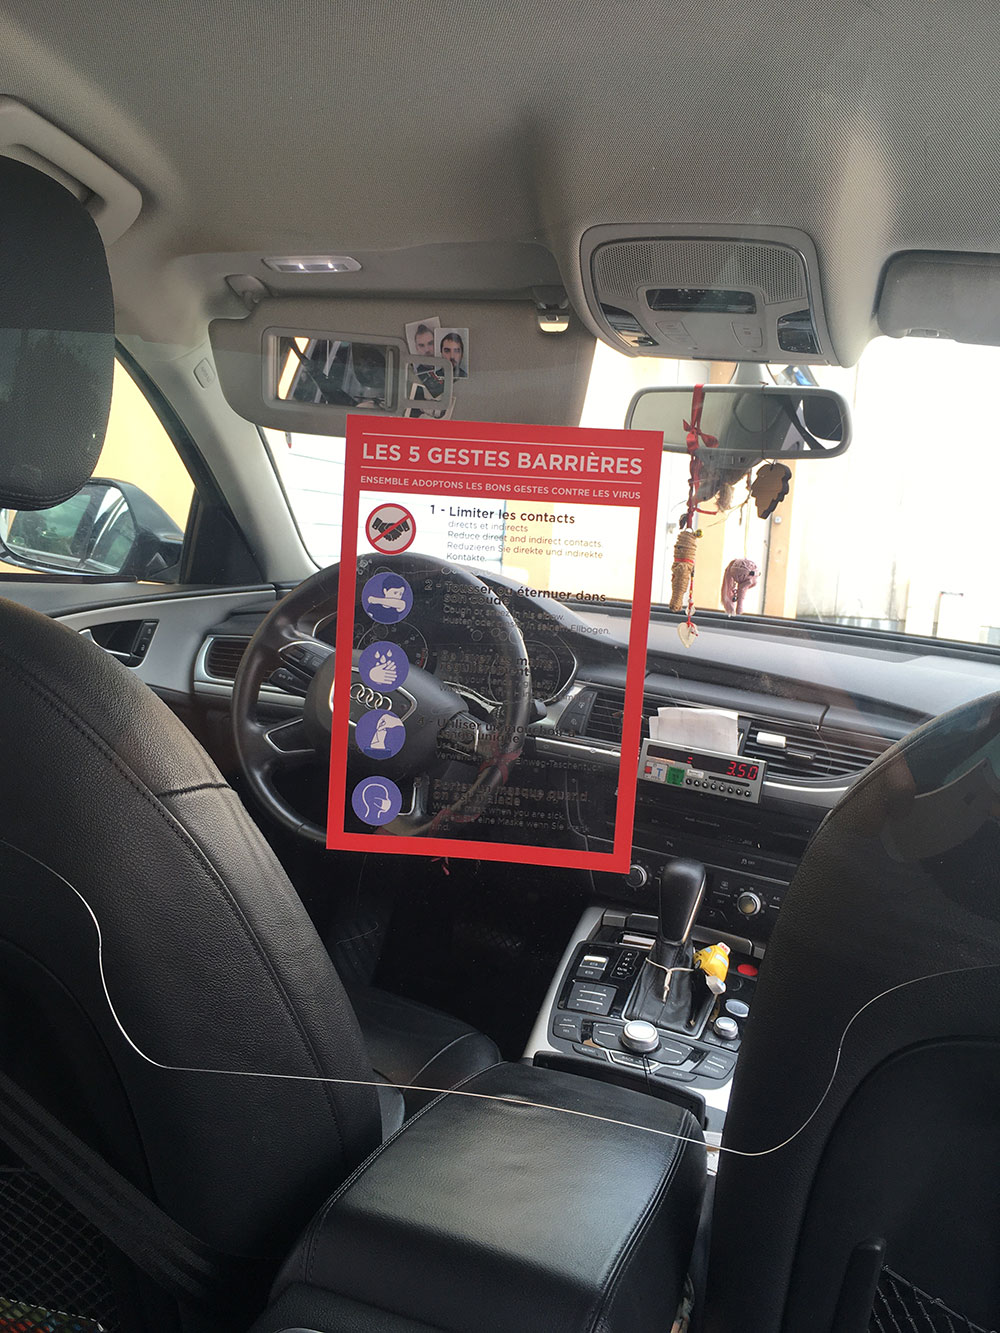 Vitre Lumex 1mm pour distanciation sociale chauffeur - passager dans taxi, vtc et transport de personnes